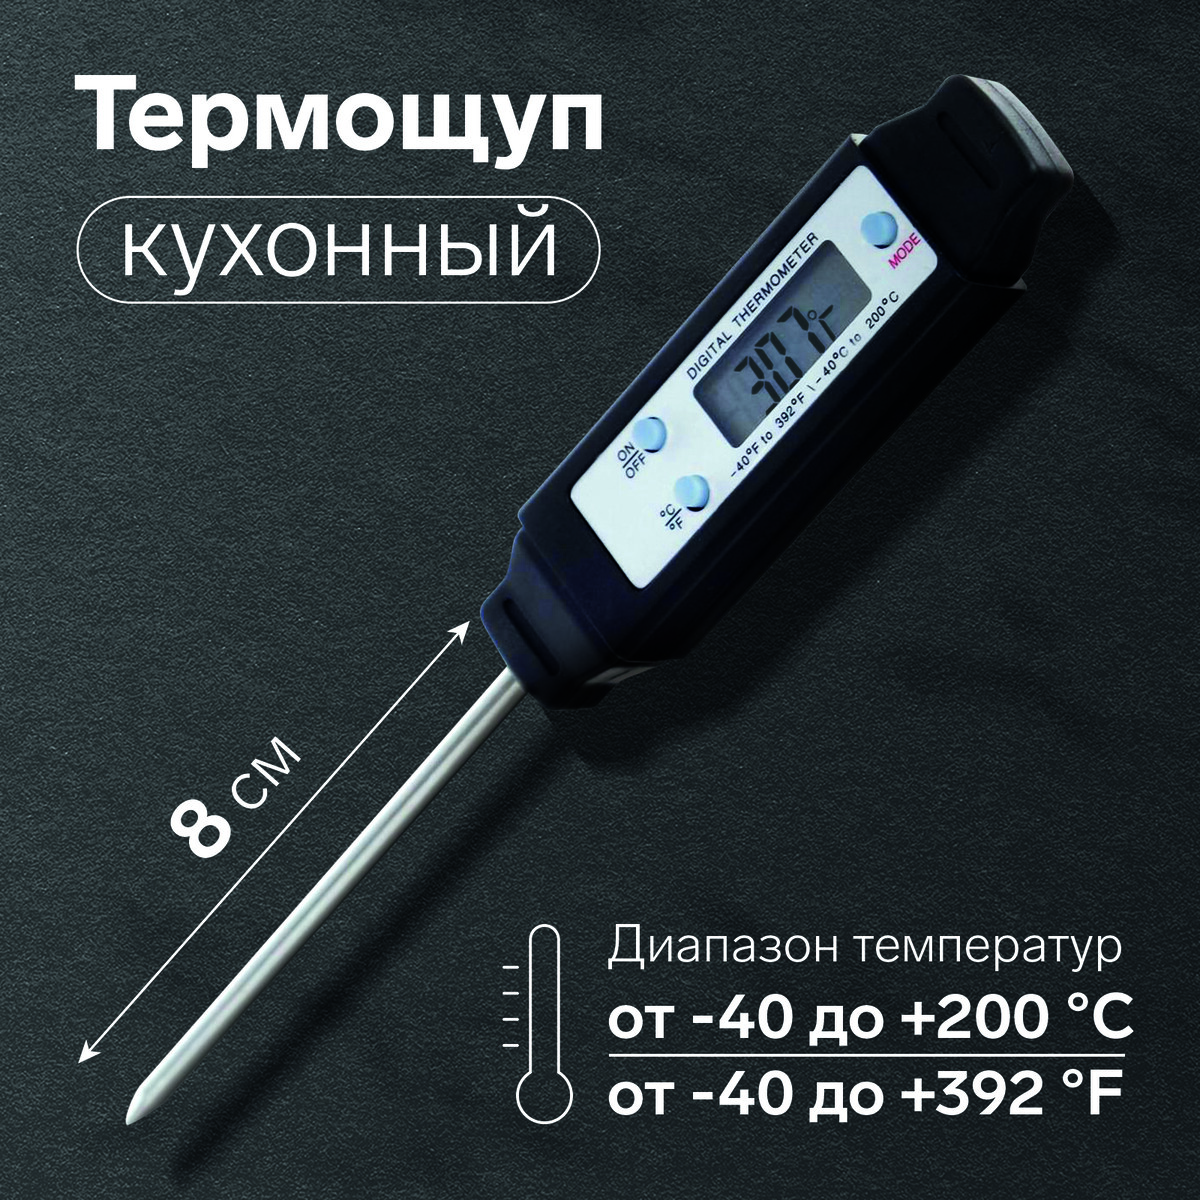 Термощуп кухонный ltp-001, максимальная температура 200 °c, от батареек lr44, черный термощуп кухонный jr 1 электронный